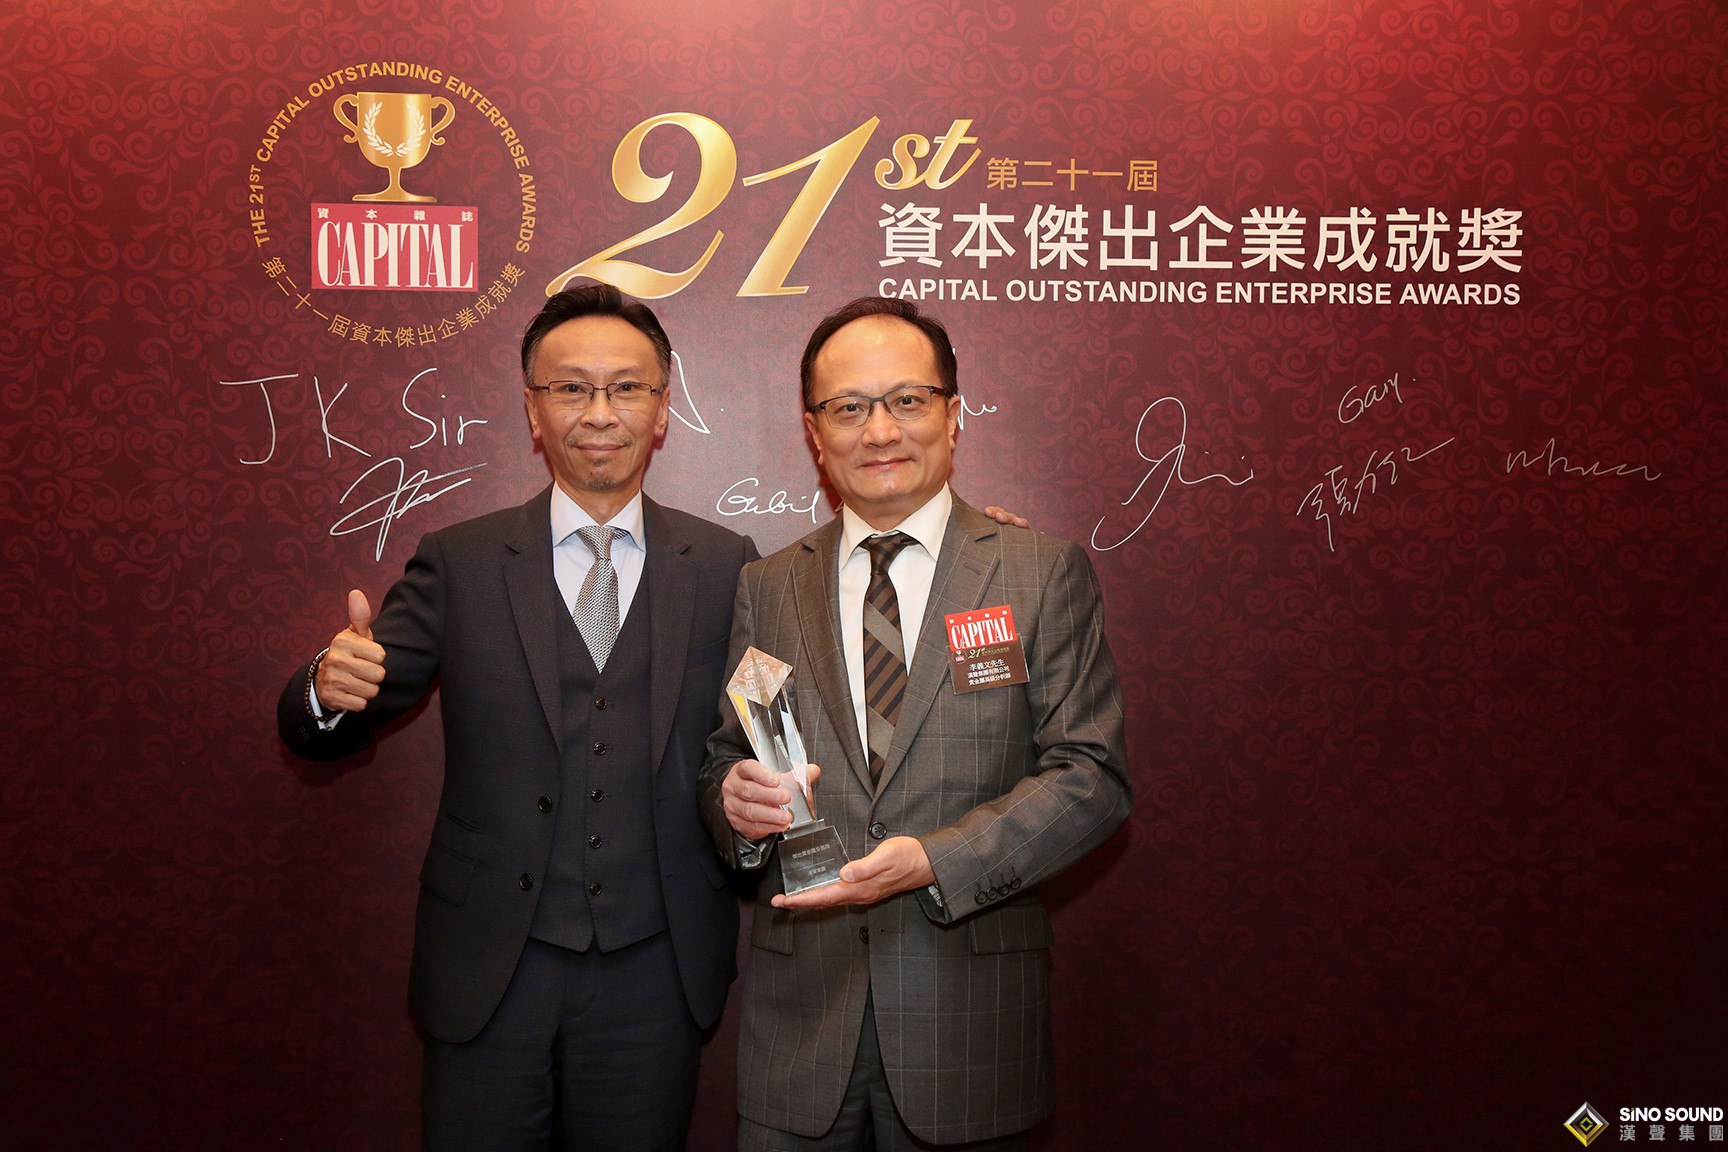 漢聲集團榮獲“第二十一屆資本杰出企業成就獎”